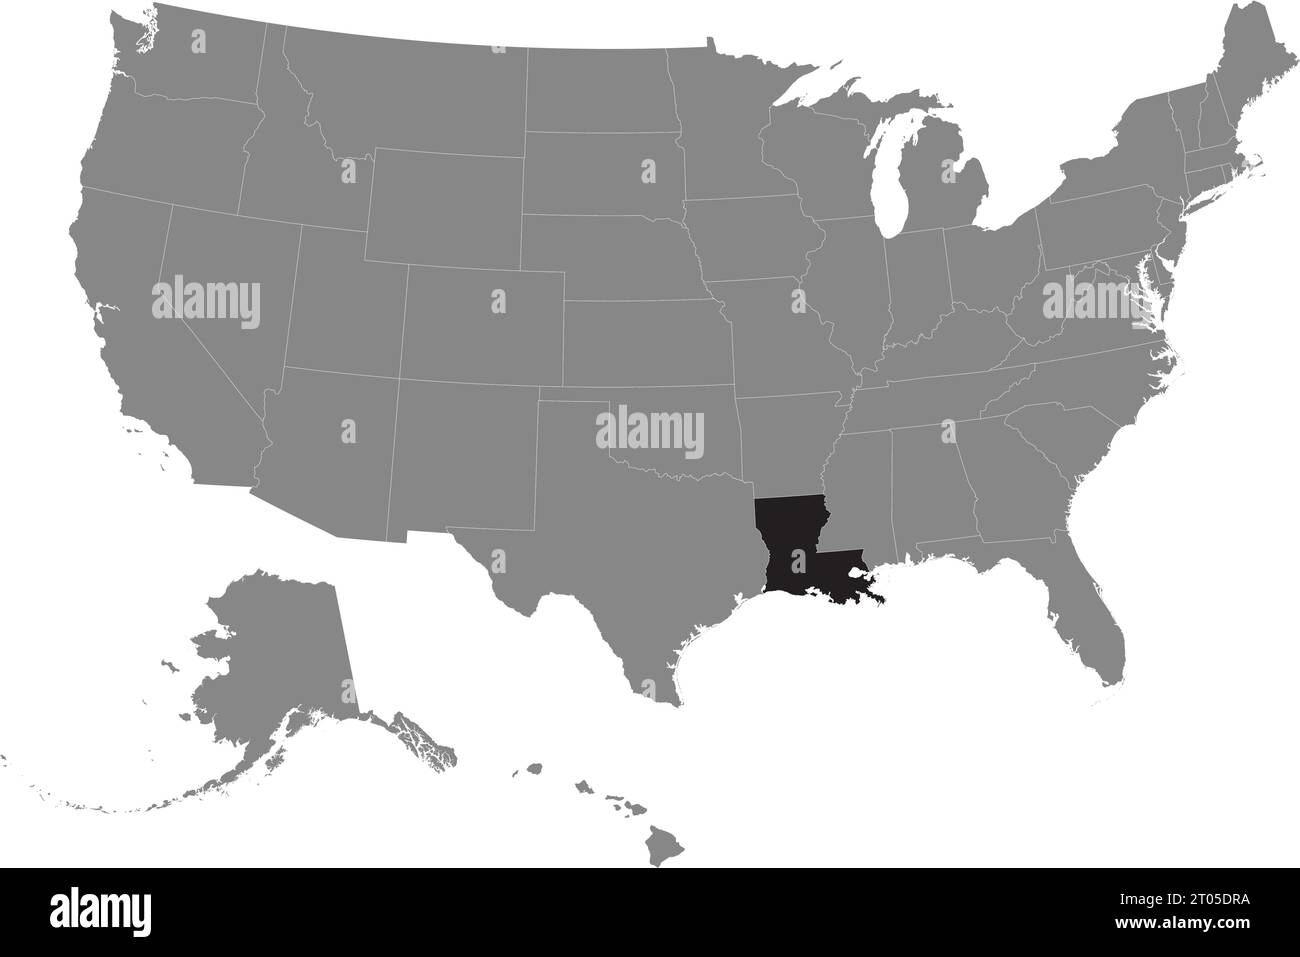 Schwarze CMYK-Bundeskarte von LOUISIANA in detaillierter grauer, leerer politischer Karte der Vereinigten Staaten von Amerika auf transparentem Hintergrund Stock Vektor